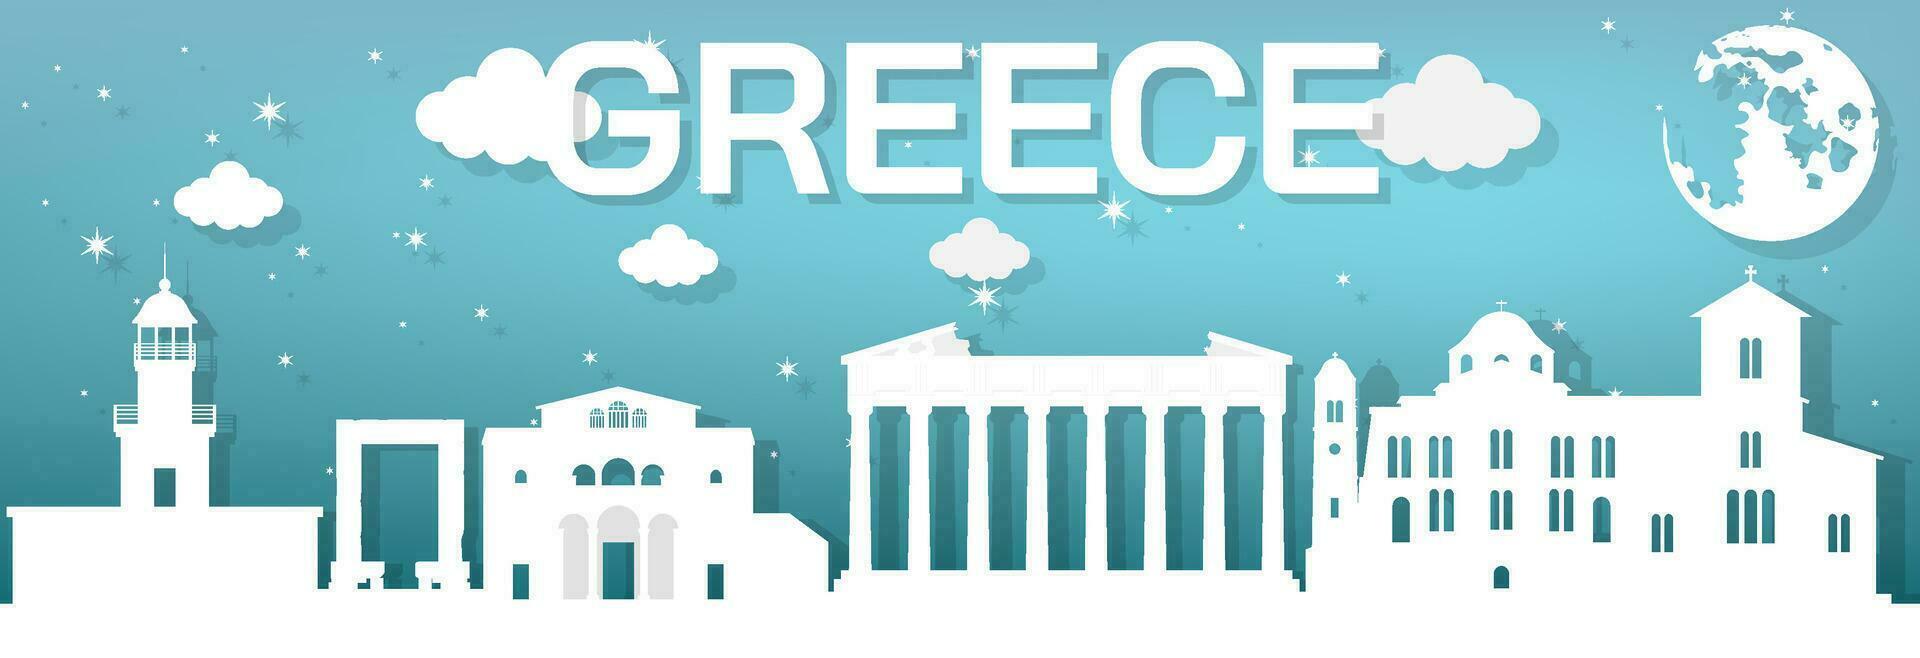 landmärken av grekland design tycka om en vit papper Skära ut placerad på en blå bakgrund på natt, vektor illustration.